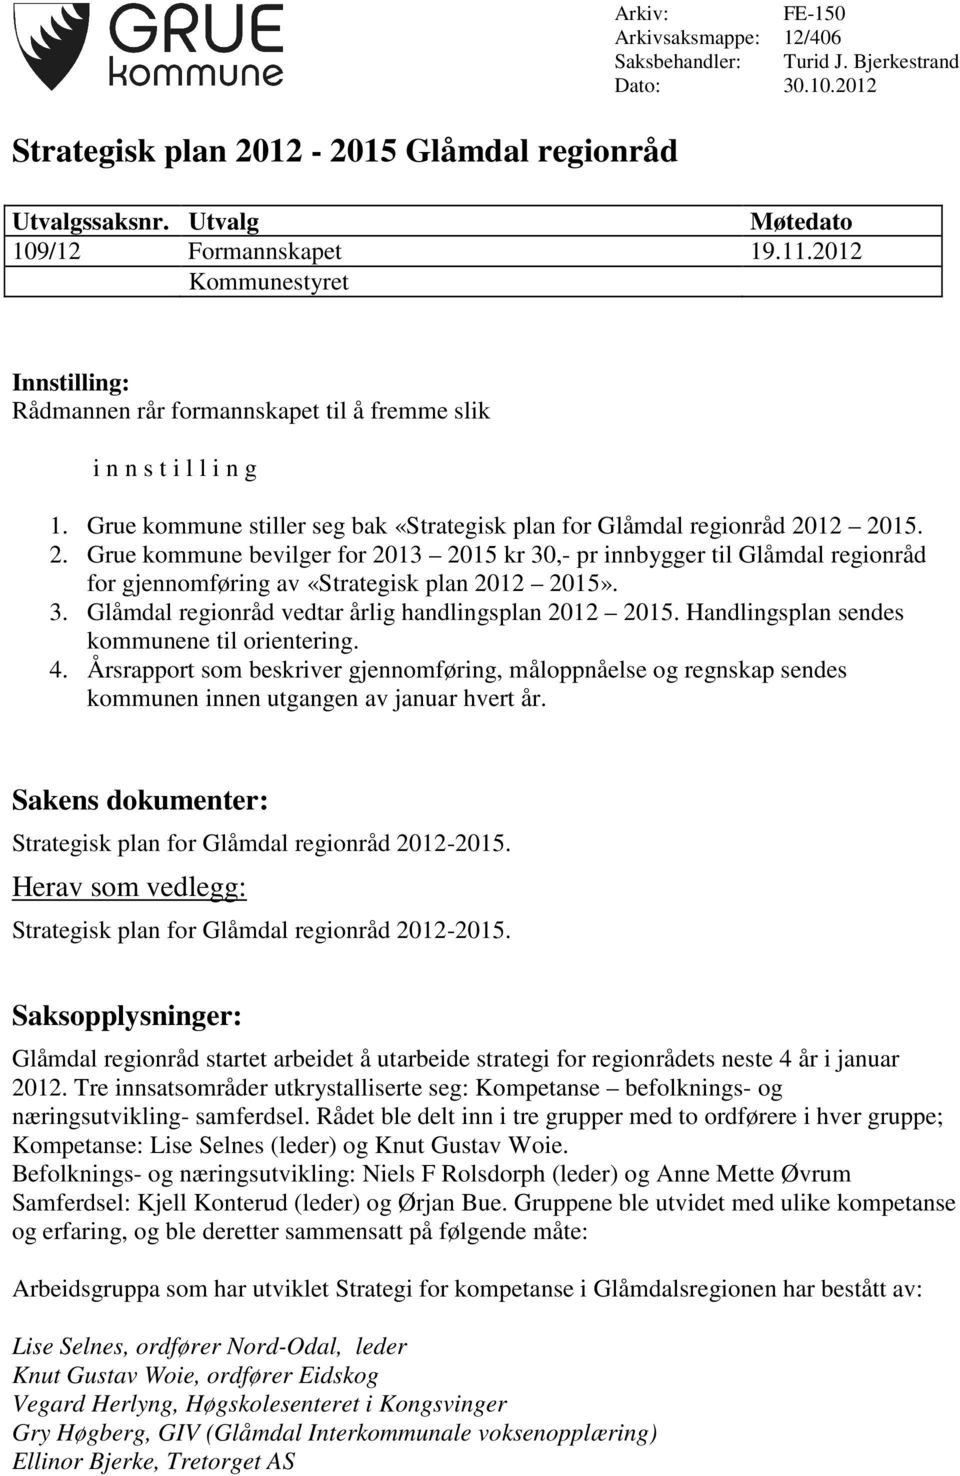 12 2015. 2. Grue kommune bevilger for 2013 2015 kr 30,- pr innbygger til Glåmdal regionråd for gjennomføring av «Strategisk plan 2012 2015». 3. Glåmdal regionråd vedtar årlig handlingsplan 2012 2015.